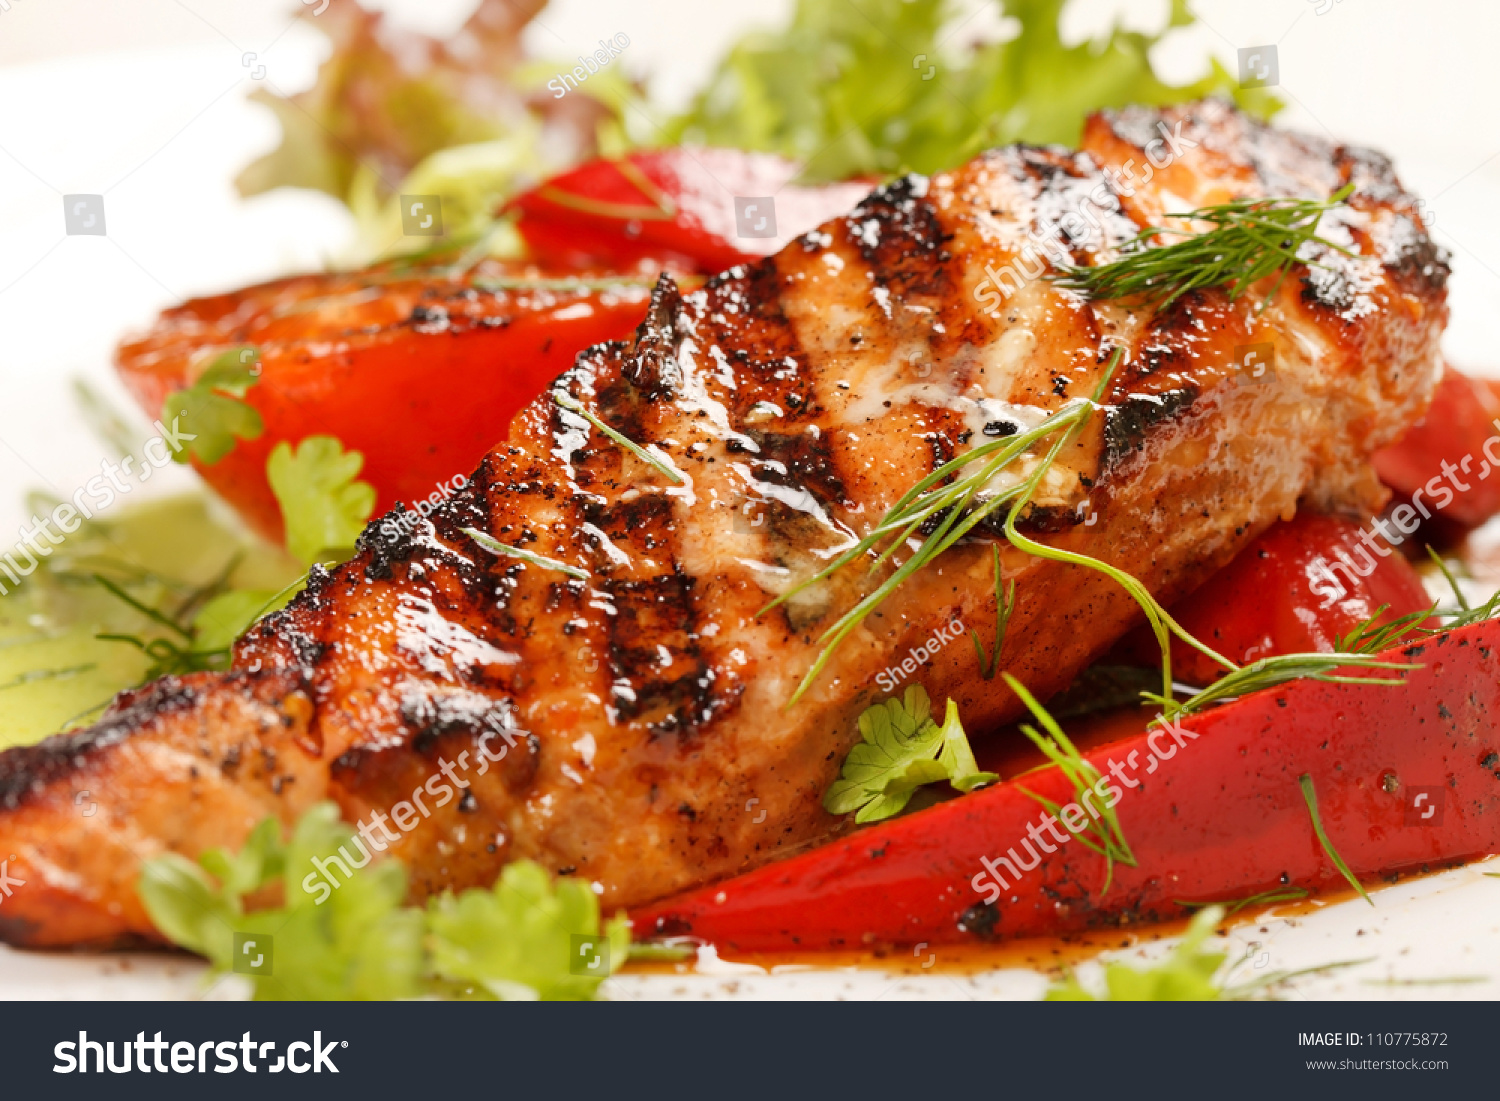 Salmon Steak Vegetables Stock Photo 110775872 - Shutterstock